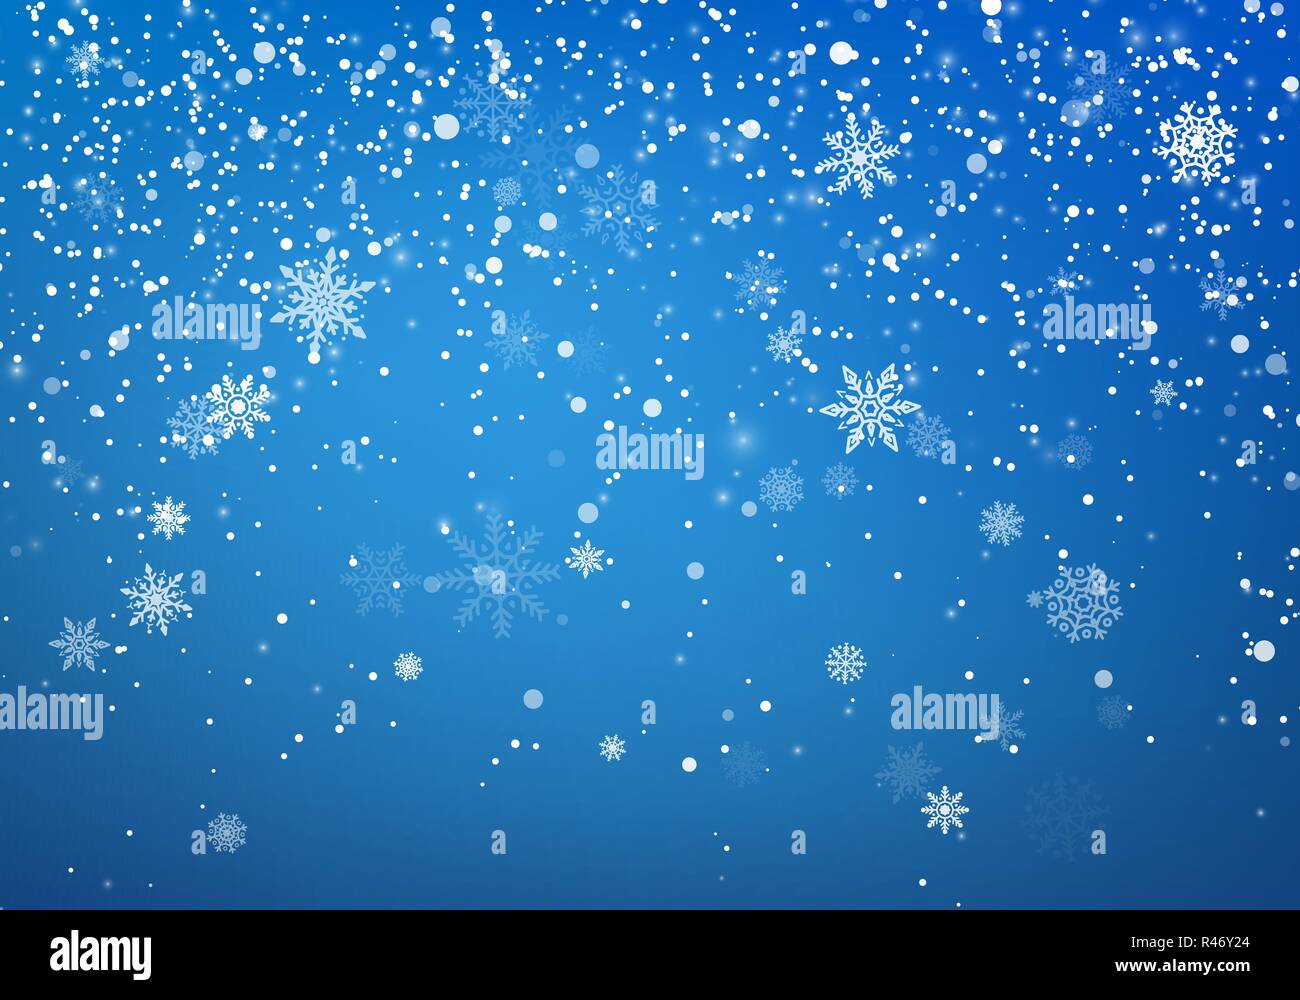 Hình nền tuyết rơi Giáng sinh mang đến cảm giác bình yên, giúp cho bạn thoải mái bên gia đình và bạn bè trong đêm Noel. Tận dụng hình nền đẹp và siêu tươi sáng này để tạo ra một tin nhắn Giáng sinh vui tươi cho người thân.